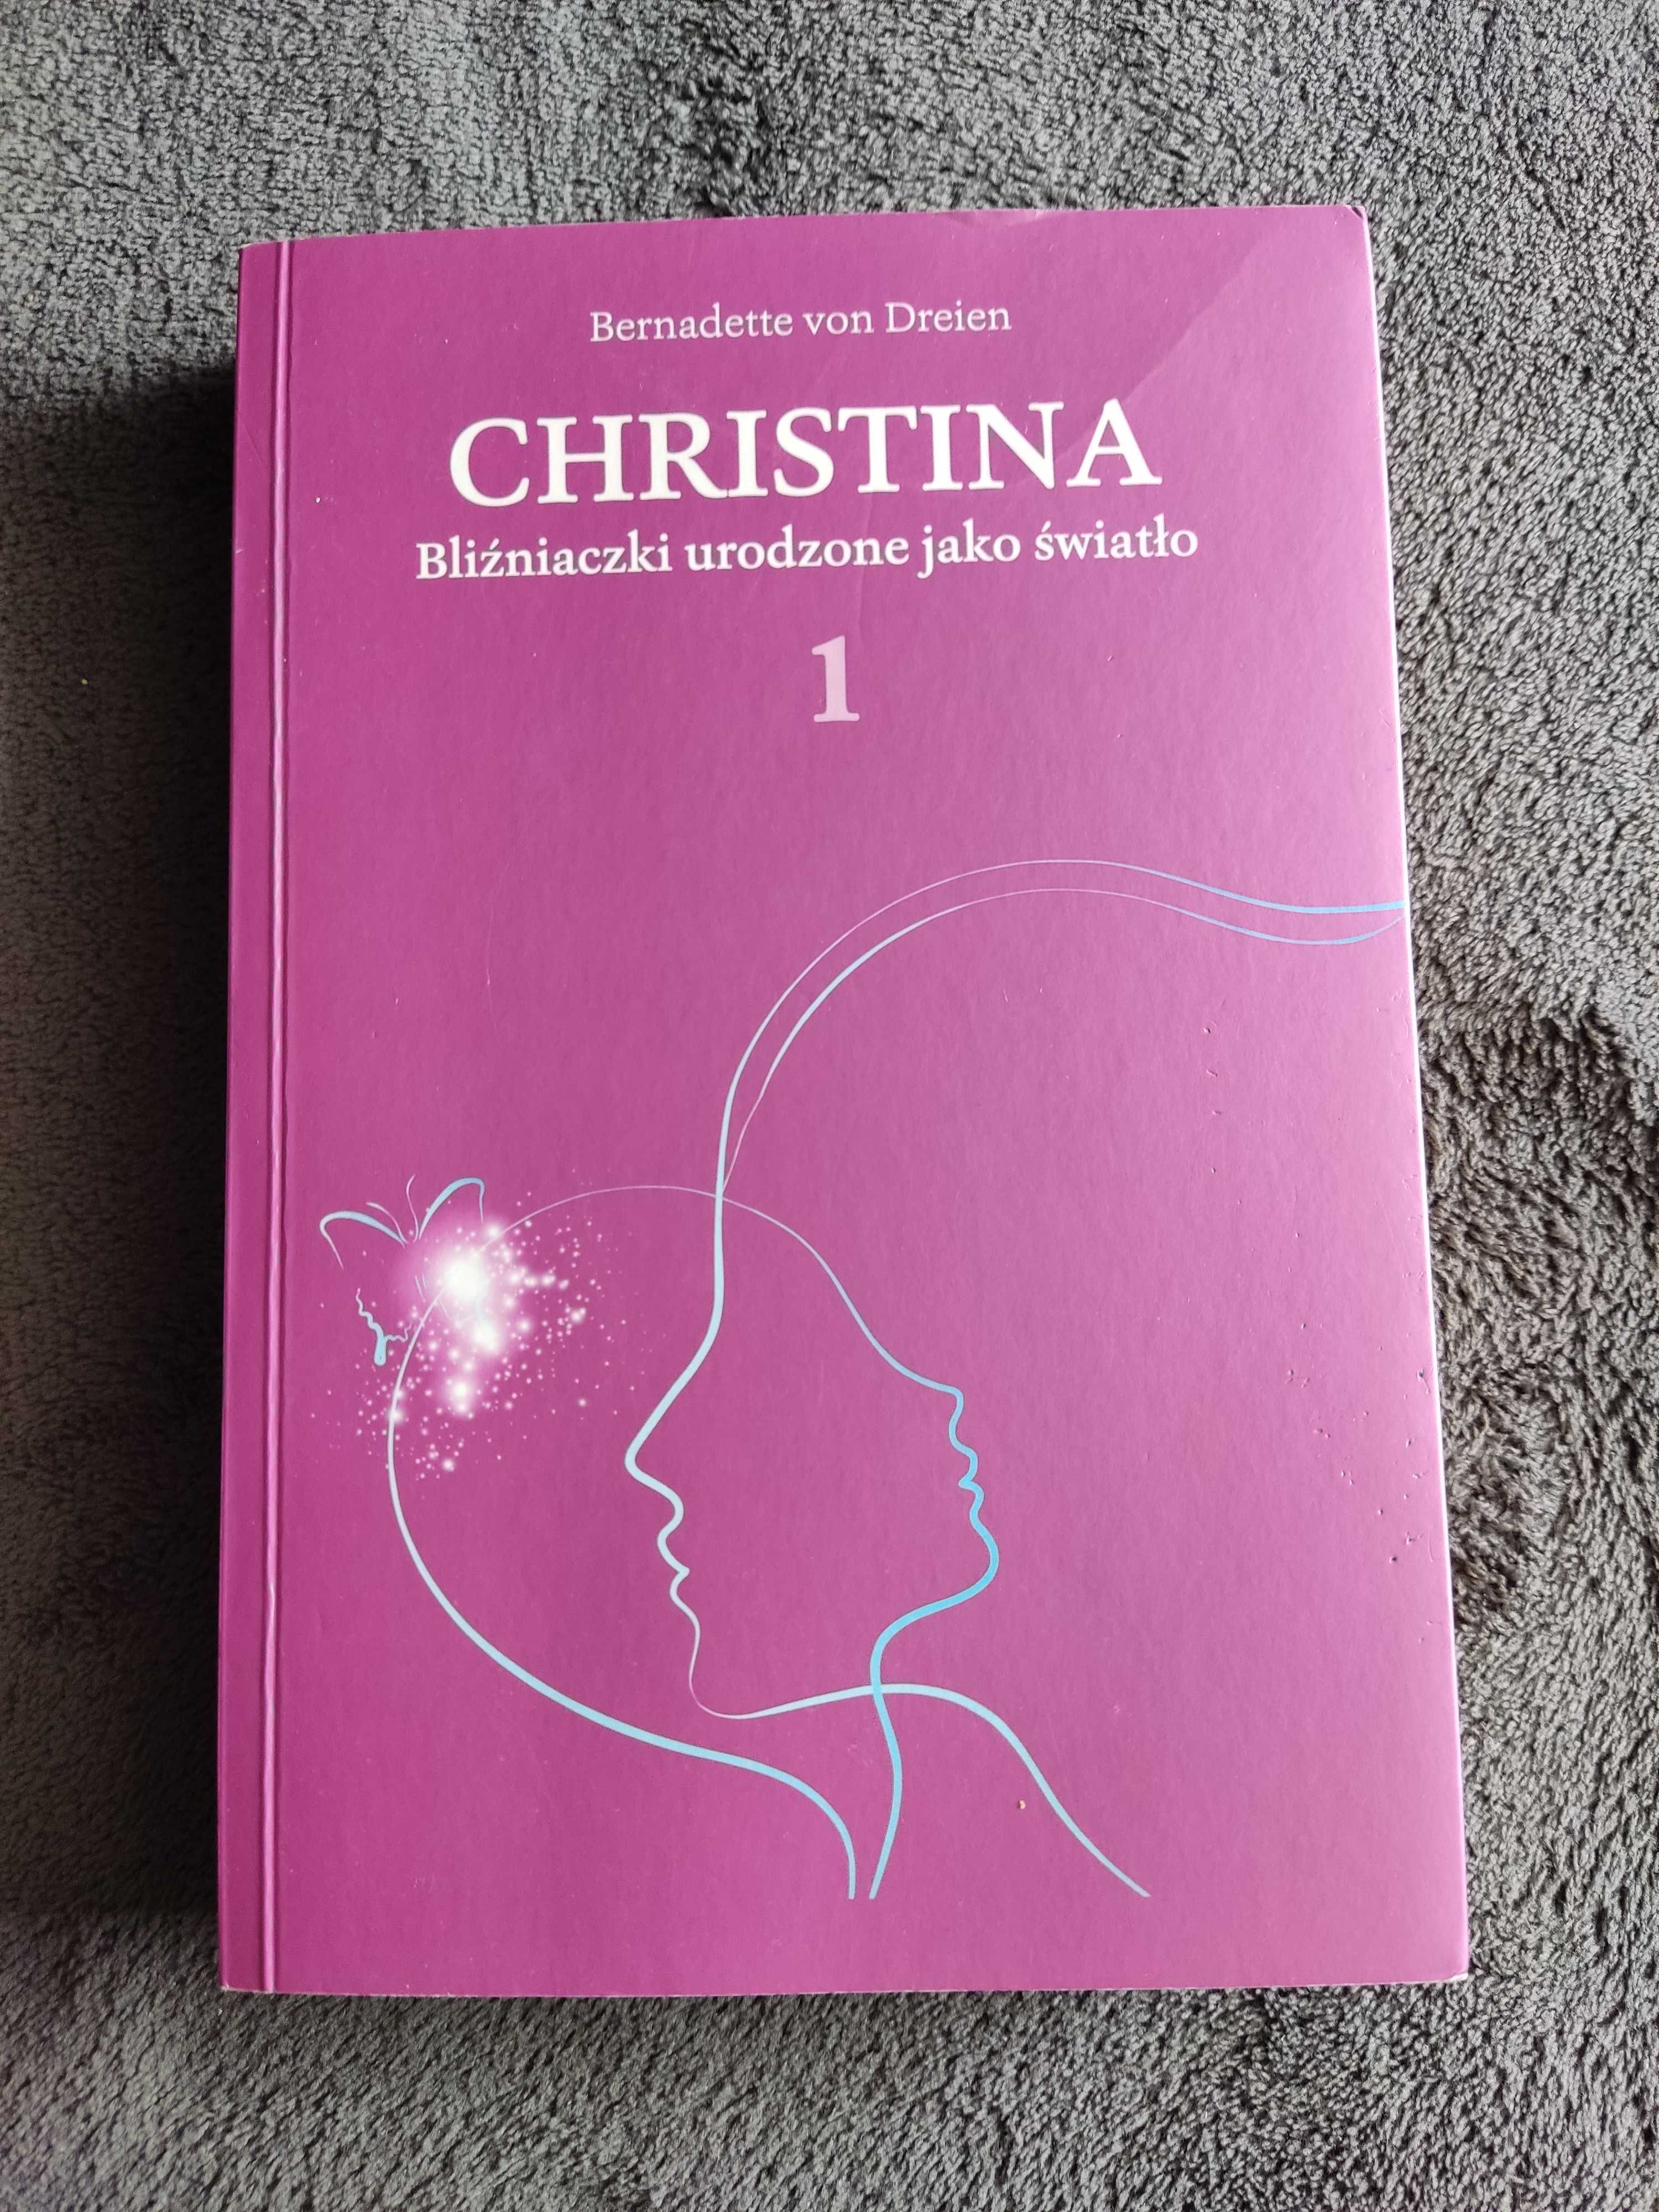 Książka Beernadette von Dreien "Christina"